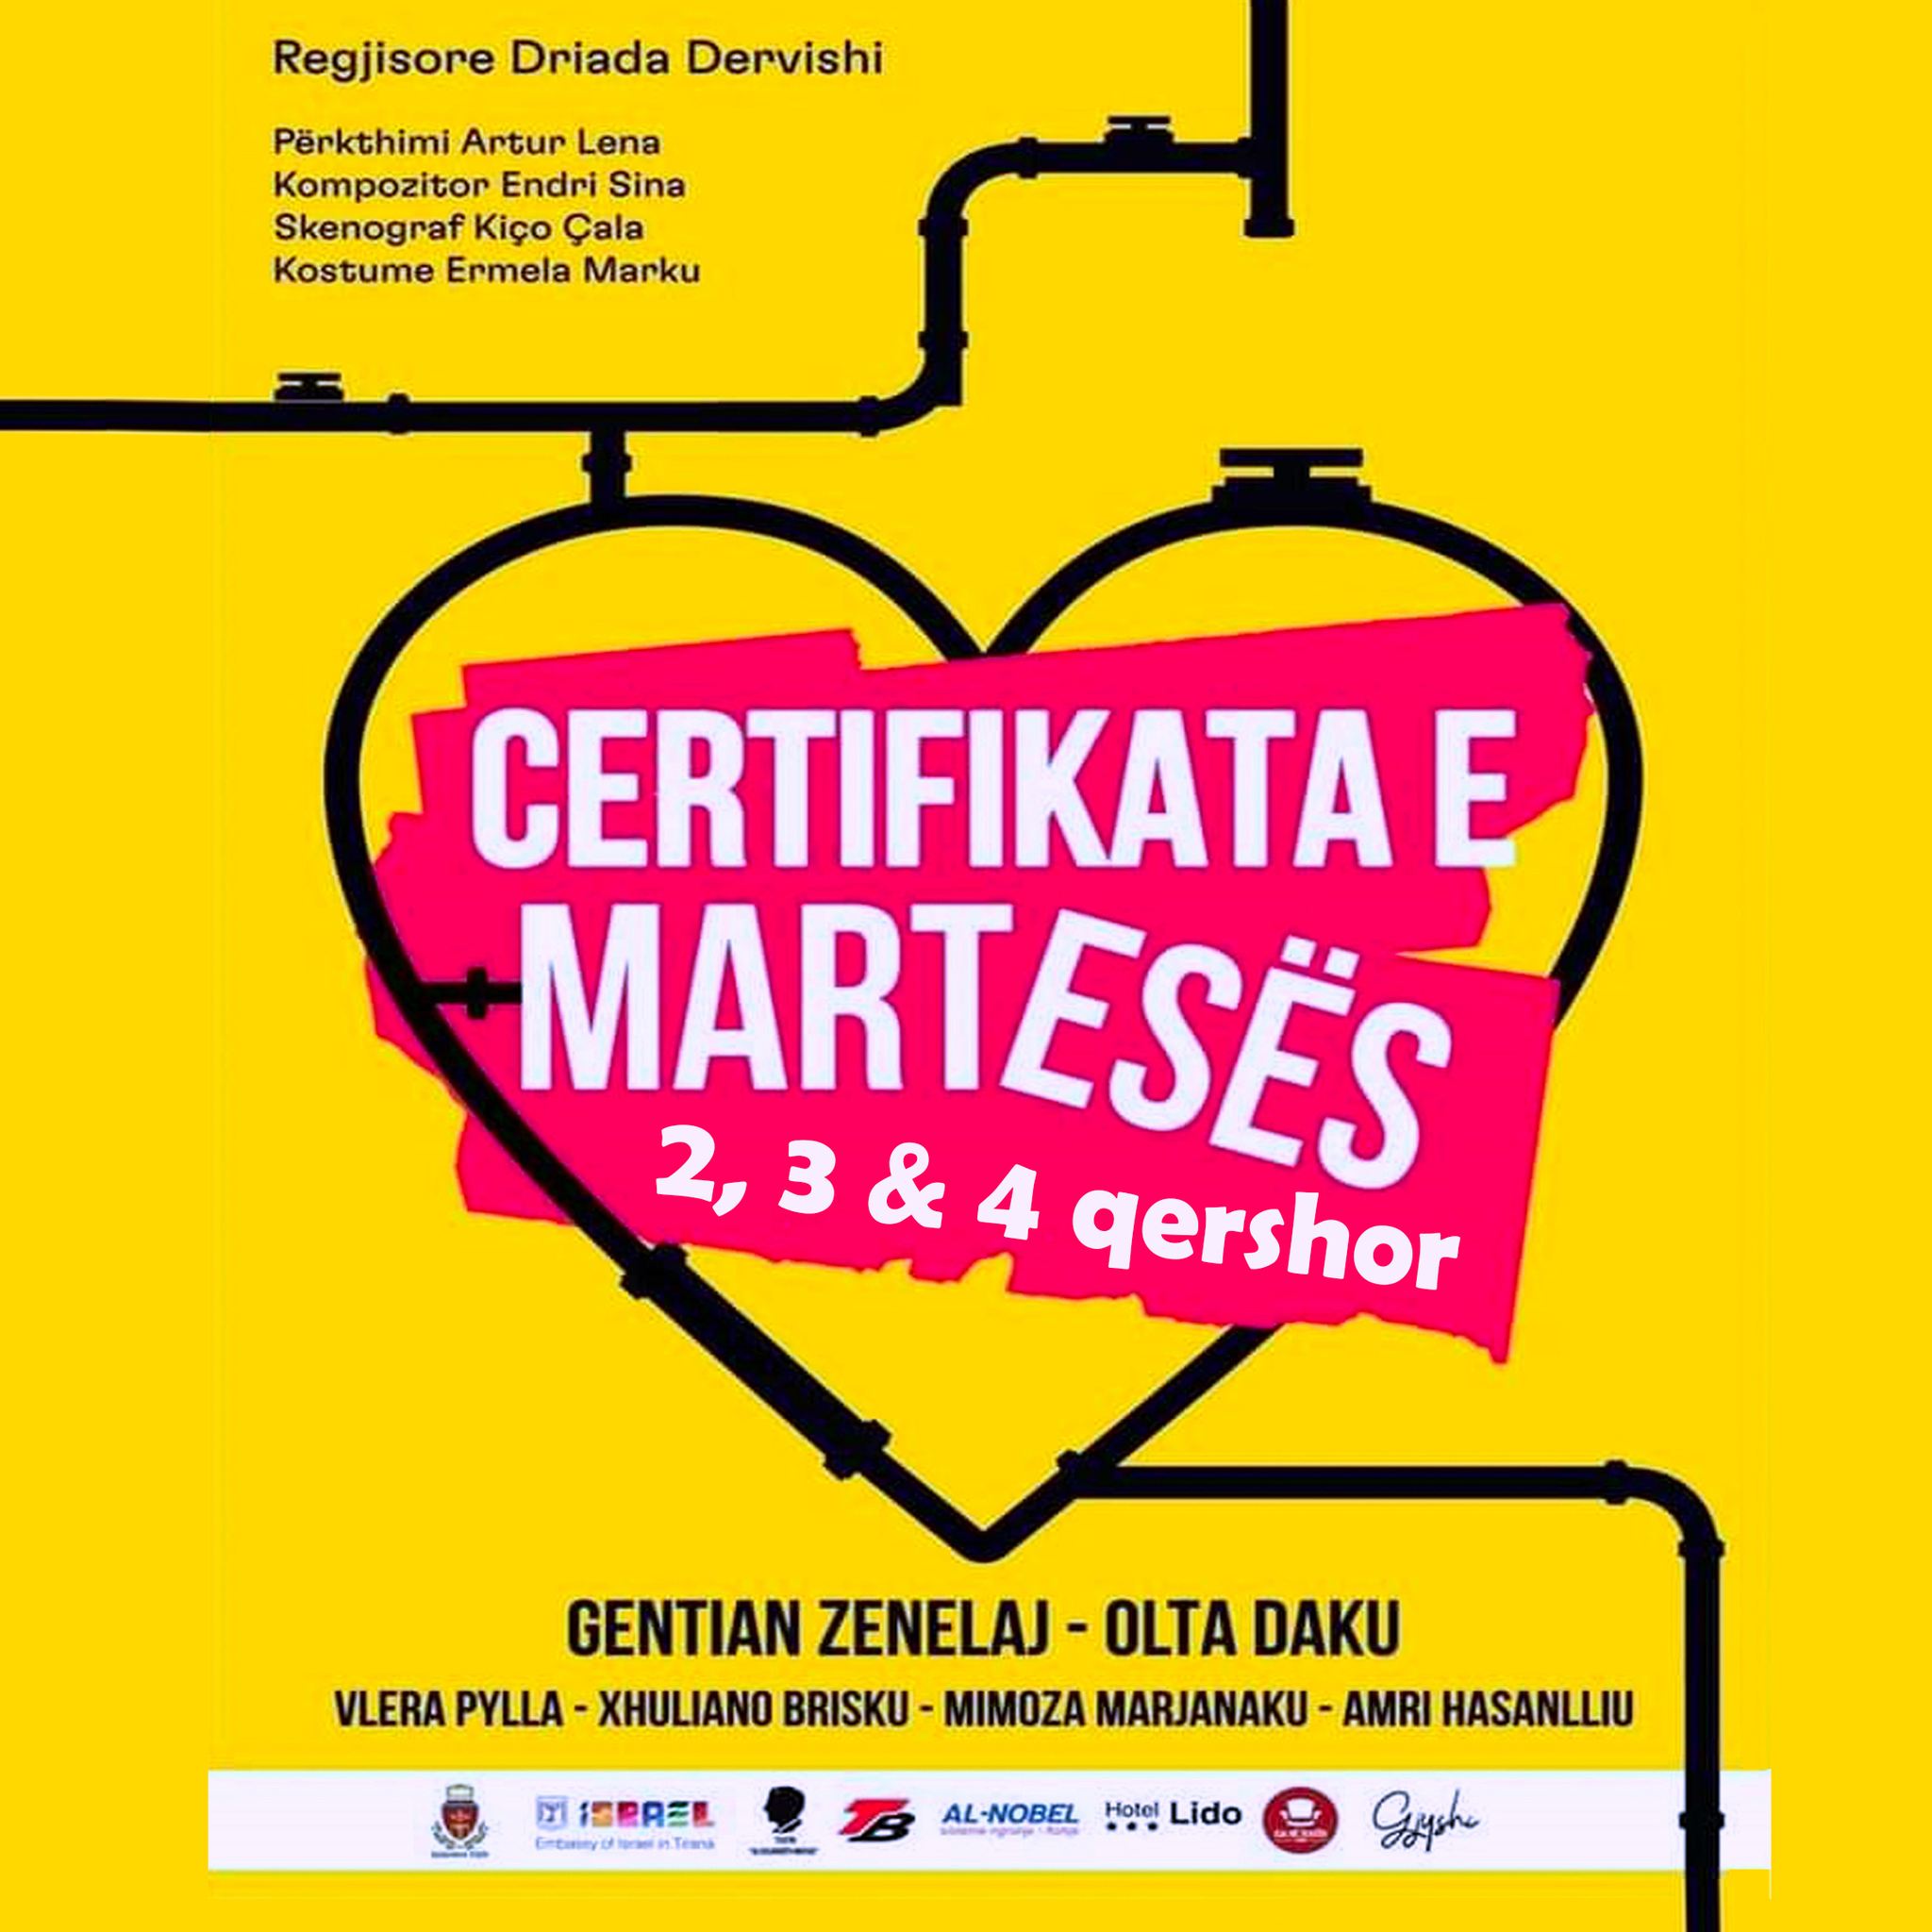 Në fundjavë, komedia “Çertifikata e martesës” rikthehet në Durrës